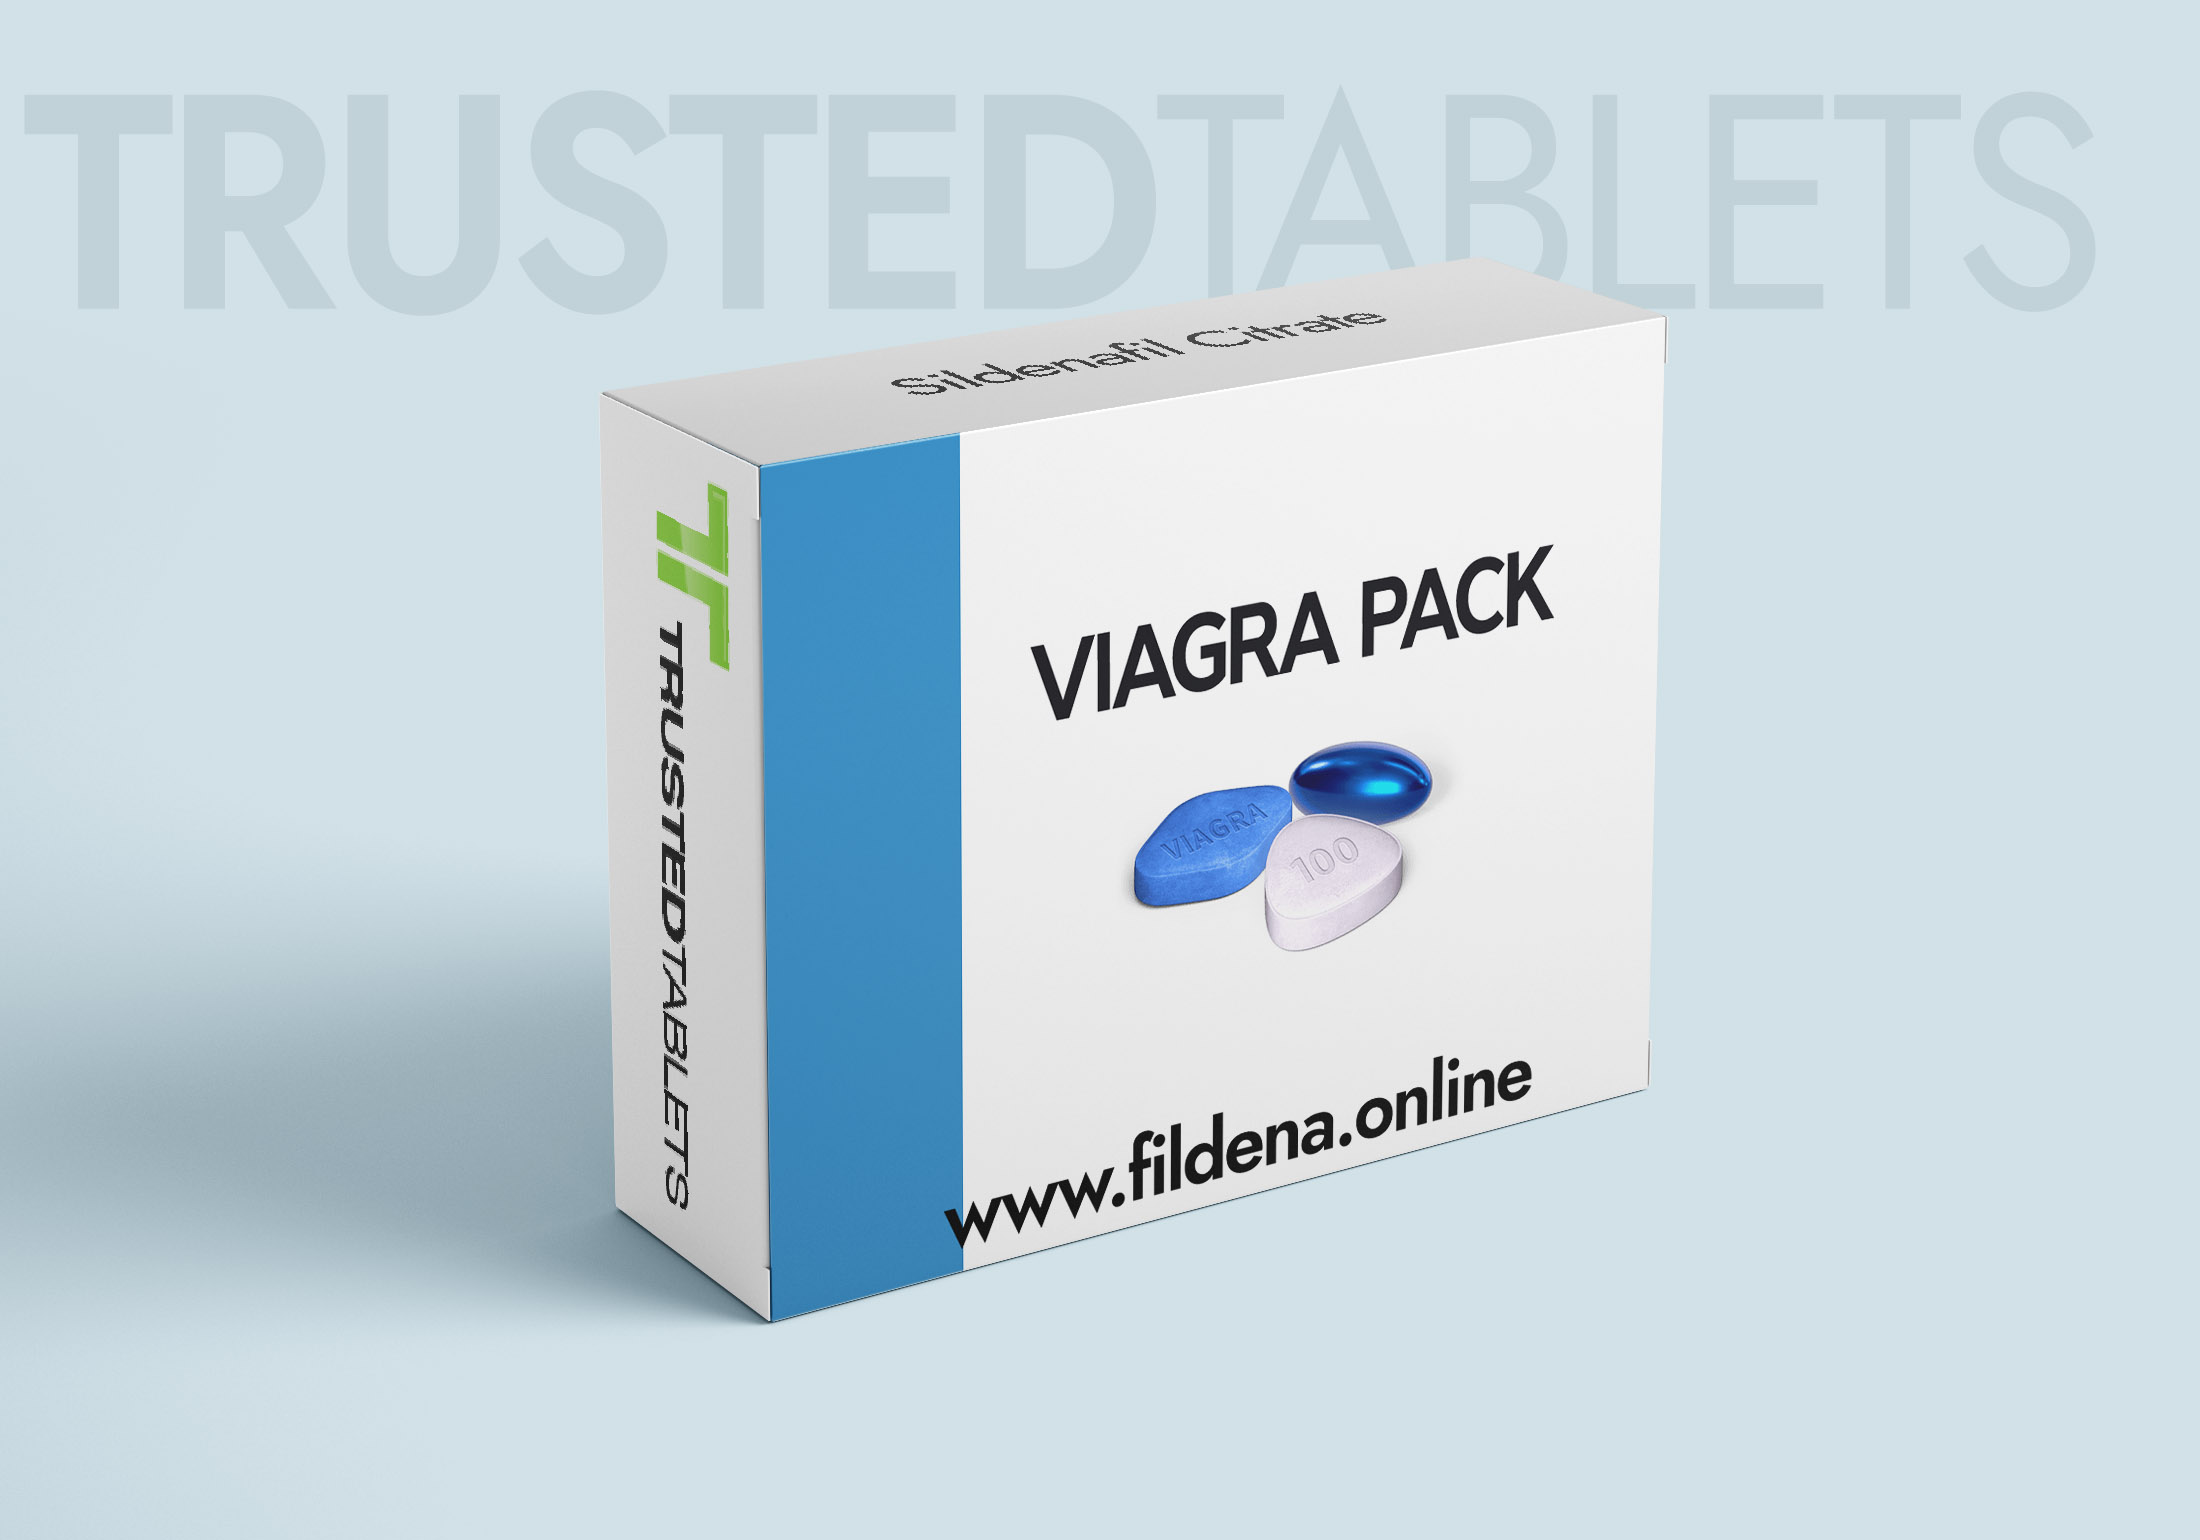 Viagra Pack TrustedTablets